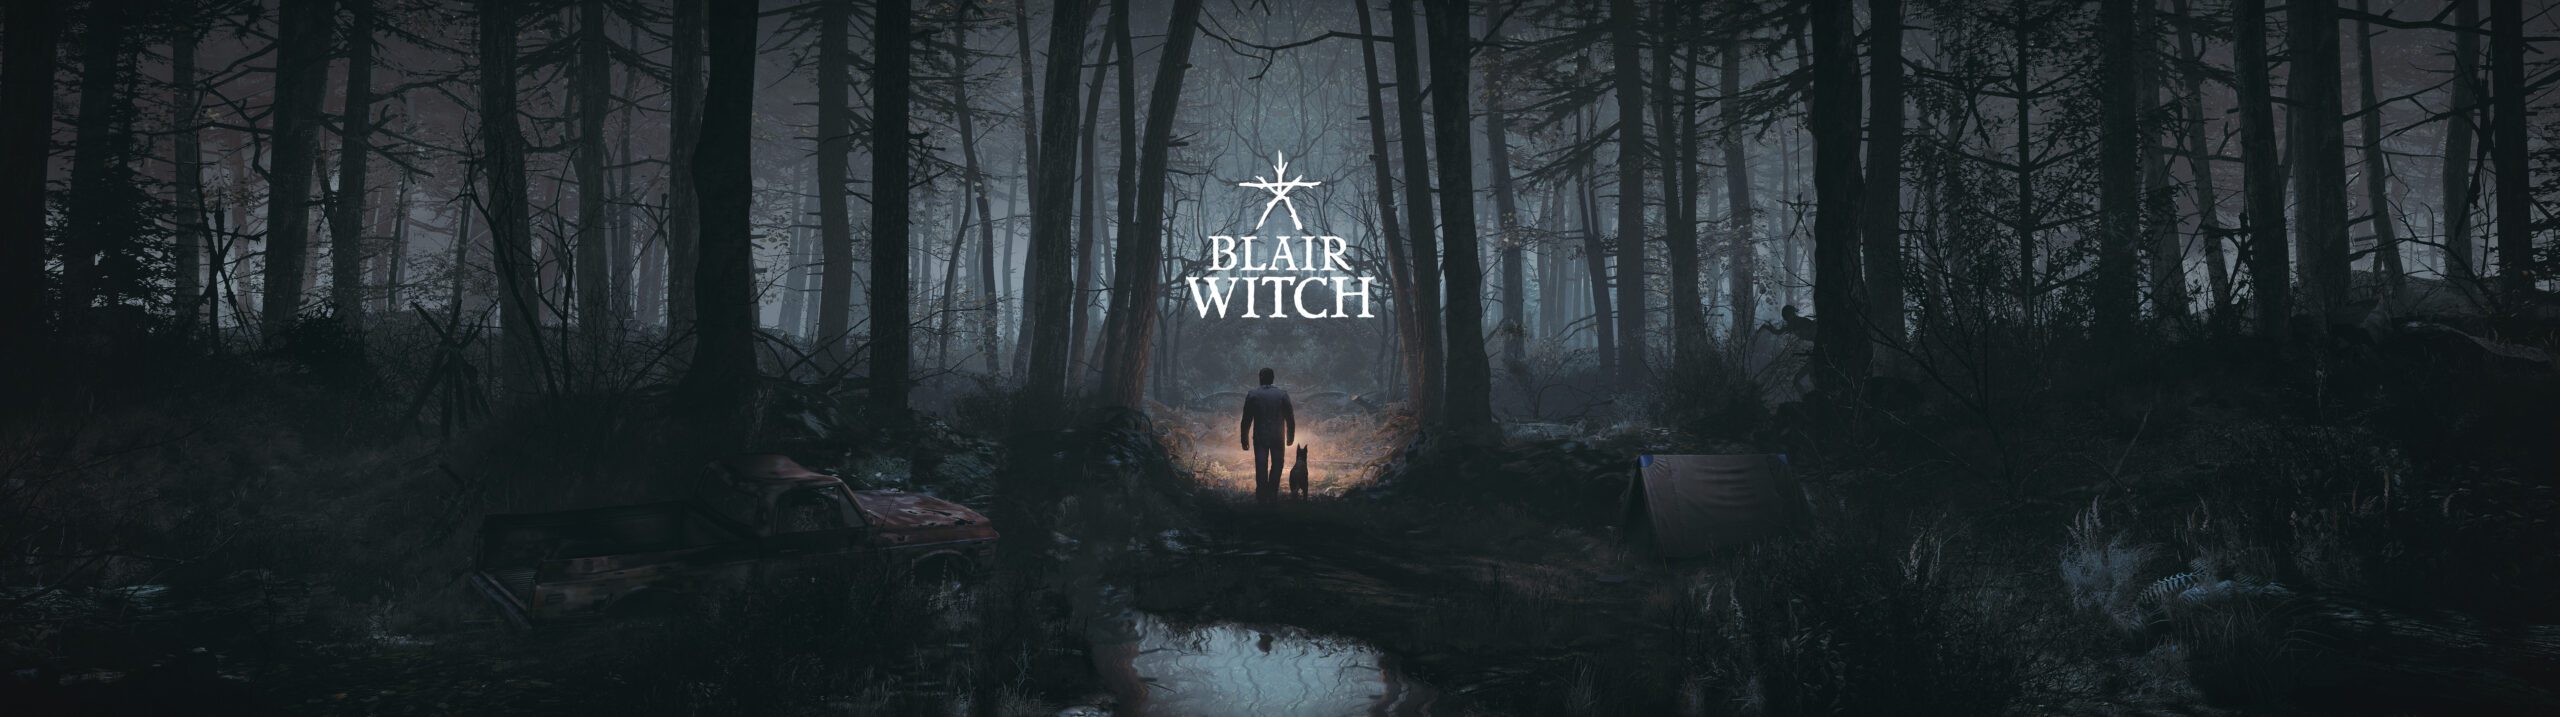 Blair Witch jetzt auf PC, XB1 und Xbox Game Pass verfügbar - Trailer starten und die ersten 11 Minuten des Spiels